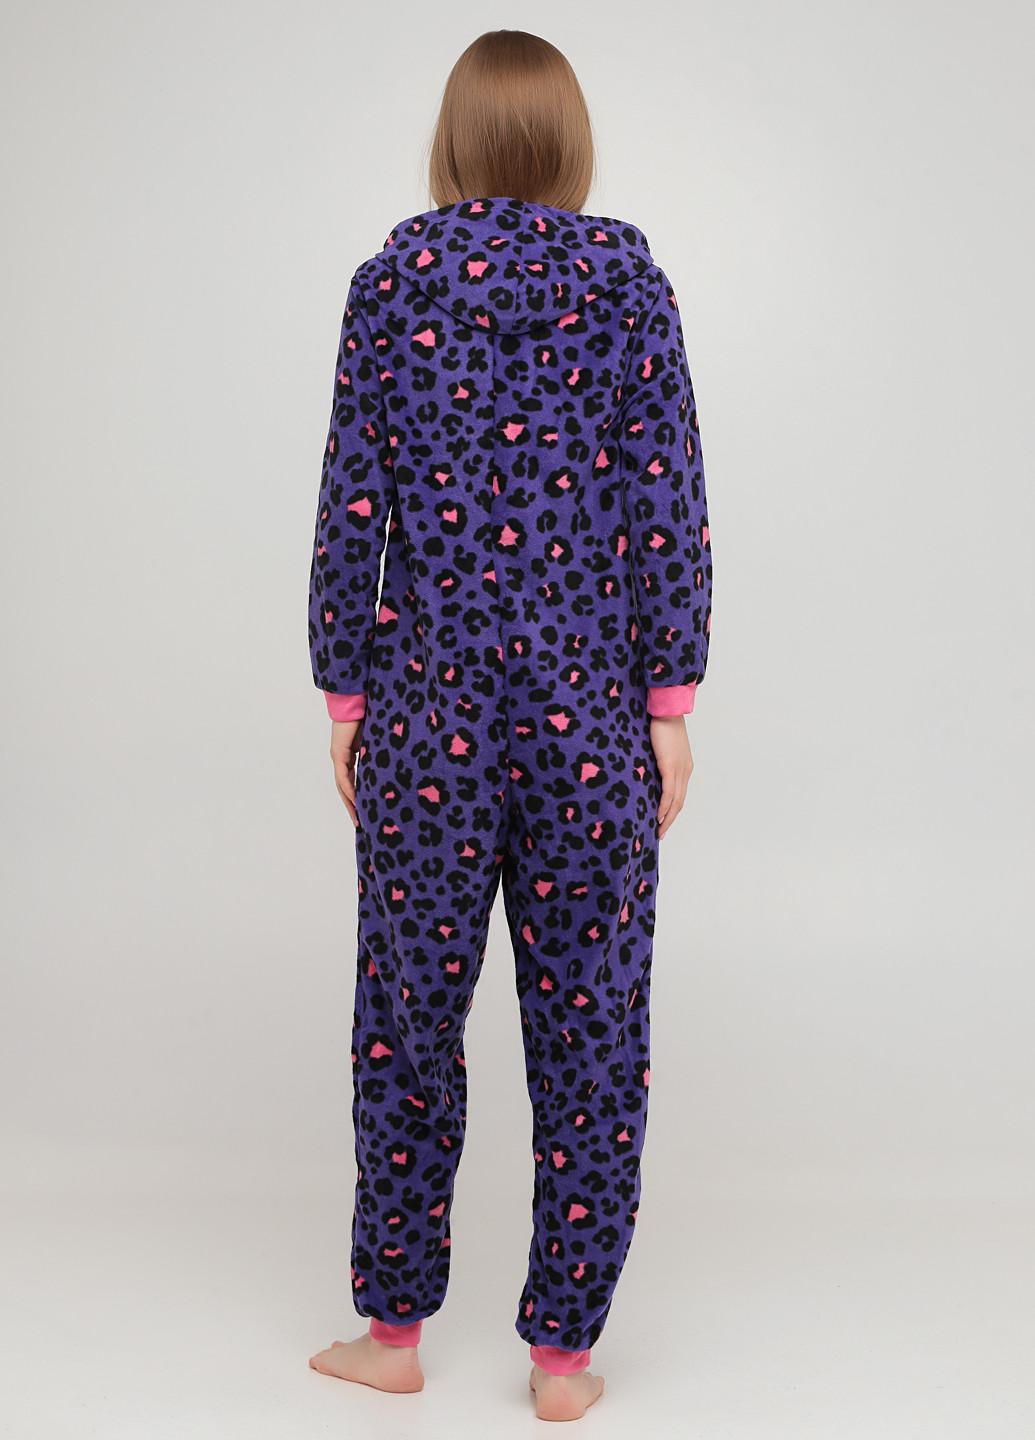 Комбинезон Studio комбинезон-брюки леопардовый тёмно-фиолетовый домашний полиэстер, флис